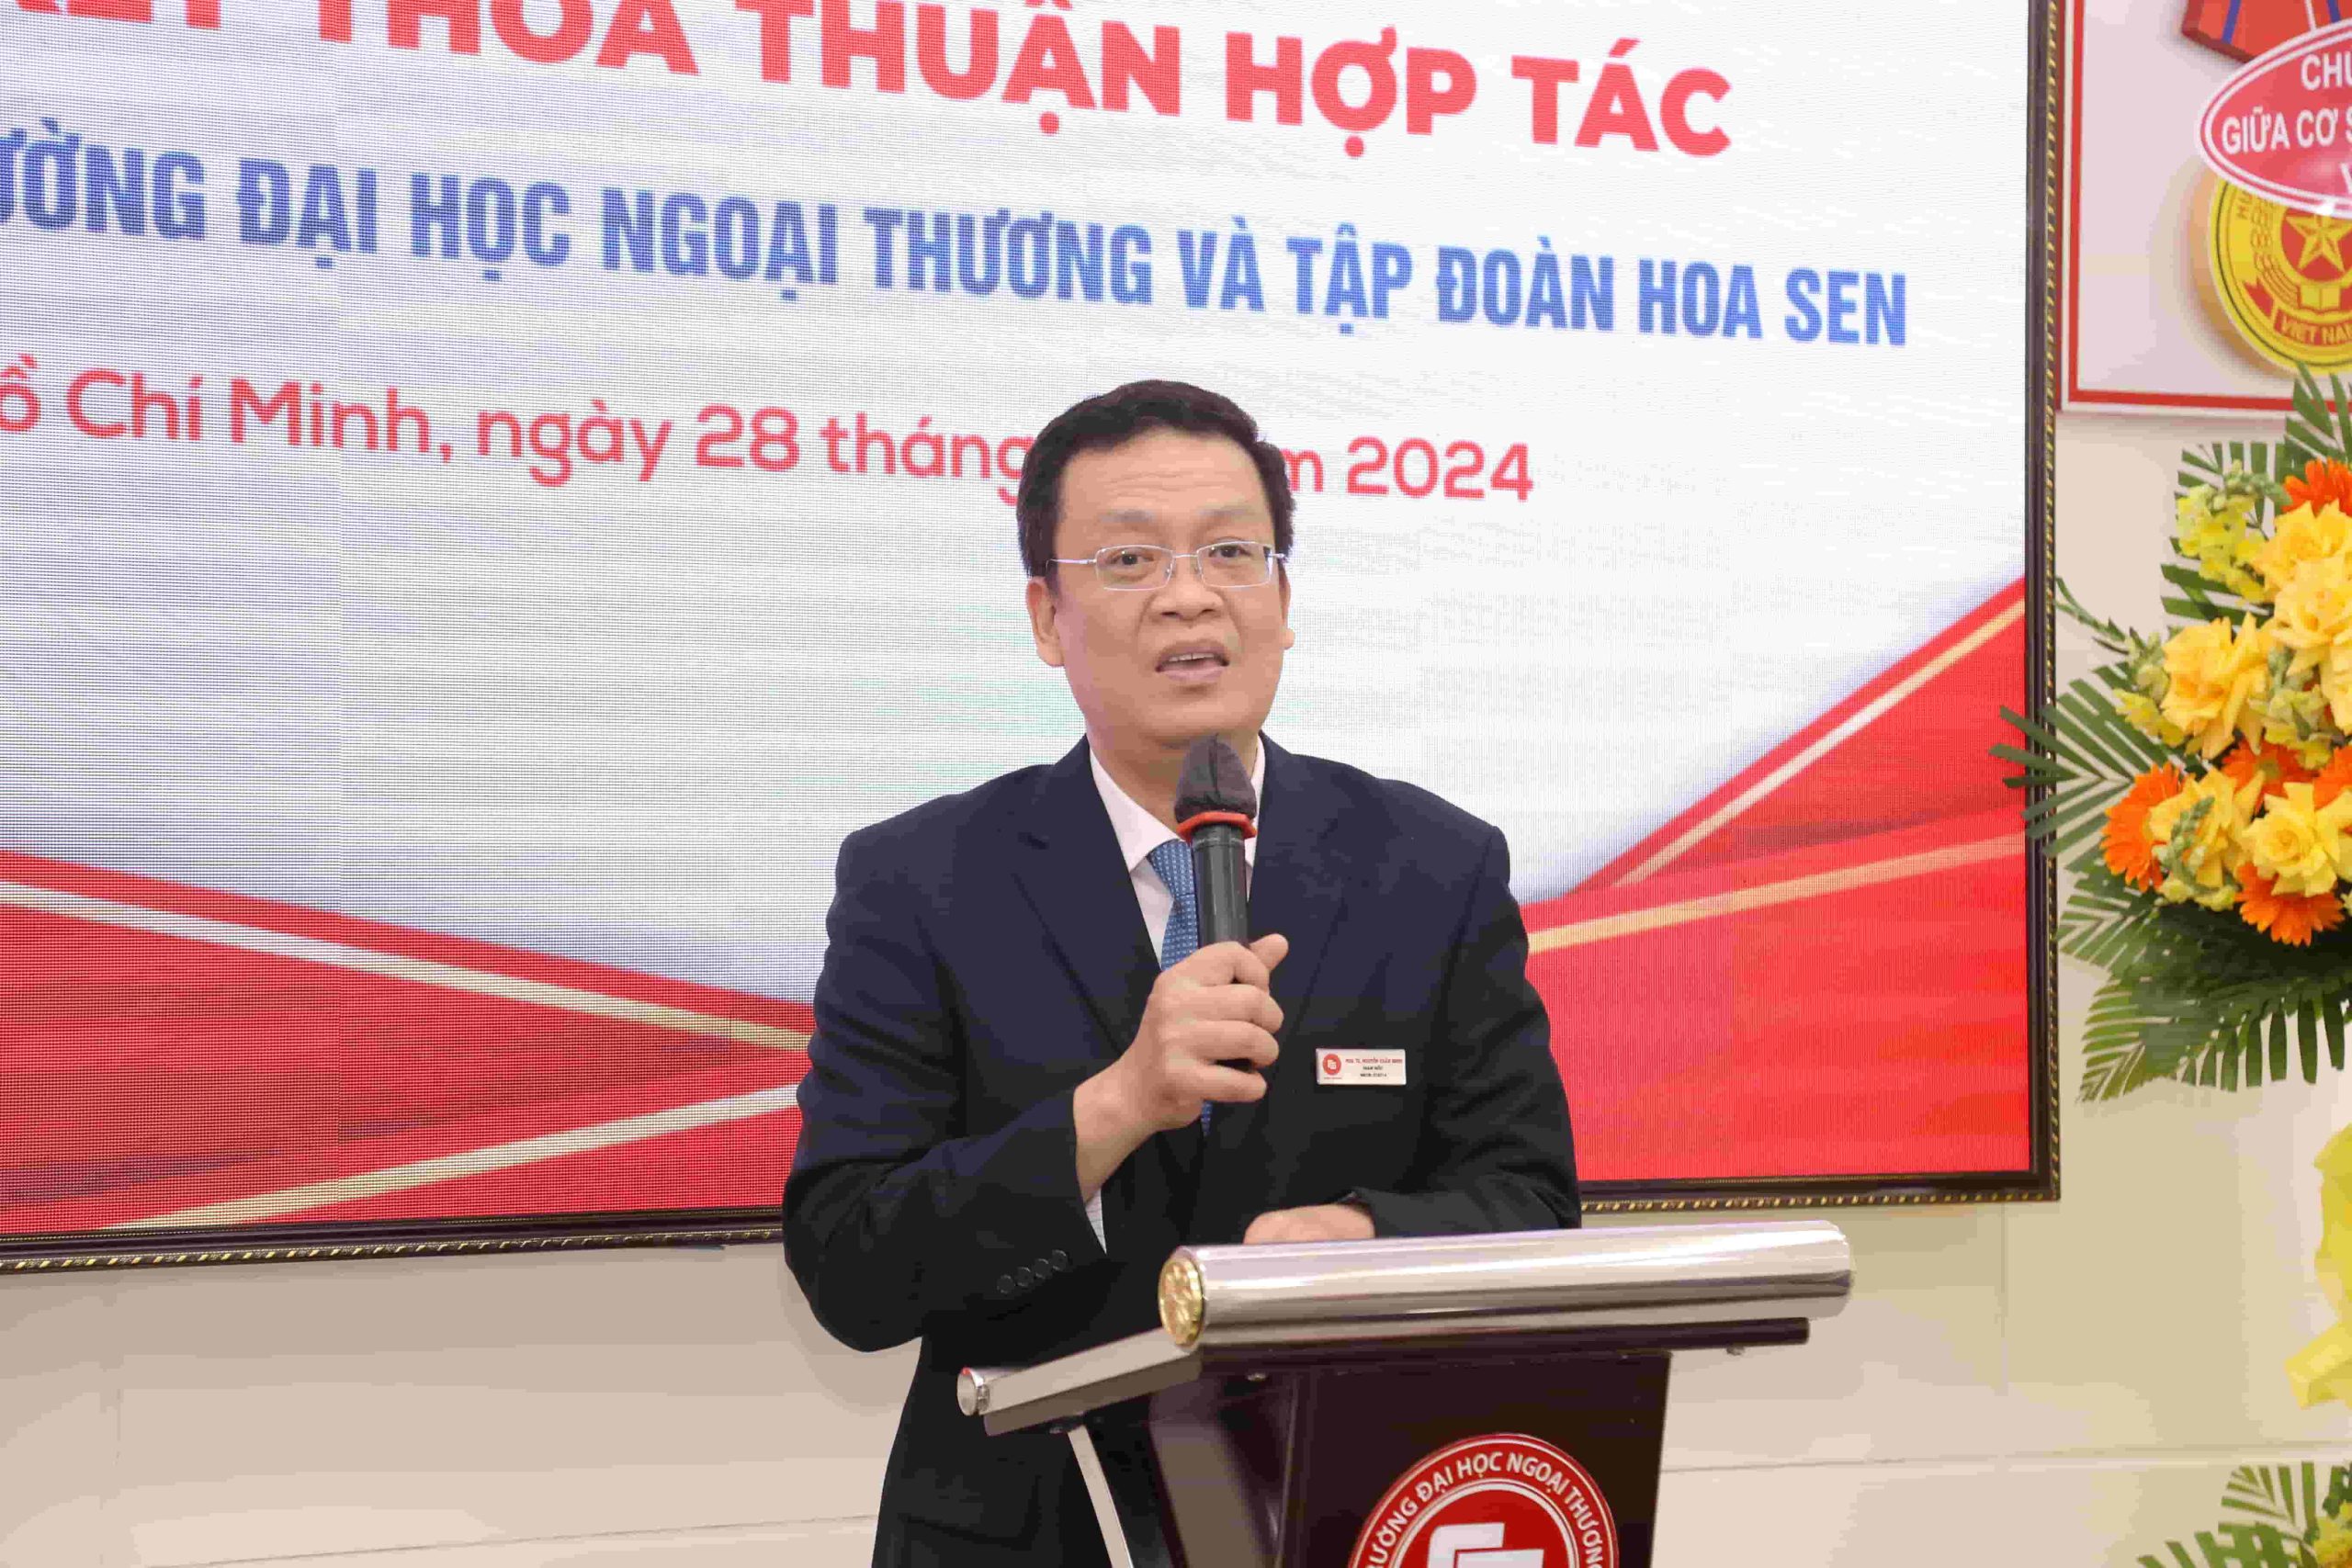 PGS, TS Nguyễn Xuân Minh phát biểu chào mừng đoàn đại biểu Tập đoàn Hoa Sen